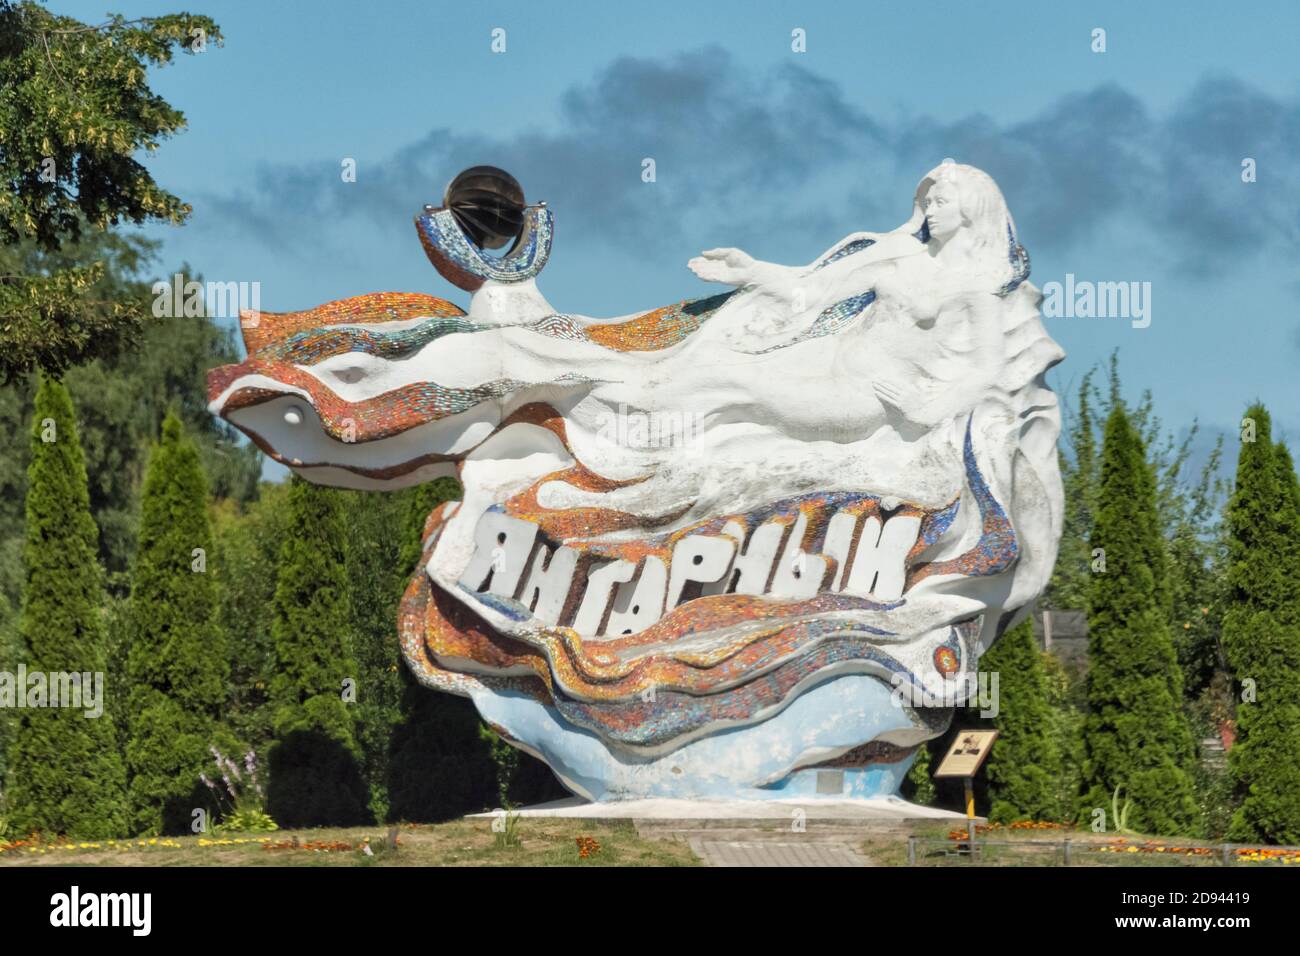 Symbol of Yantarny, Mermaid in the Sea Waves, Yantarny, Kaliningrad Oblast, Russia Stock Photo